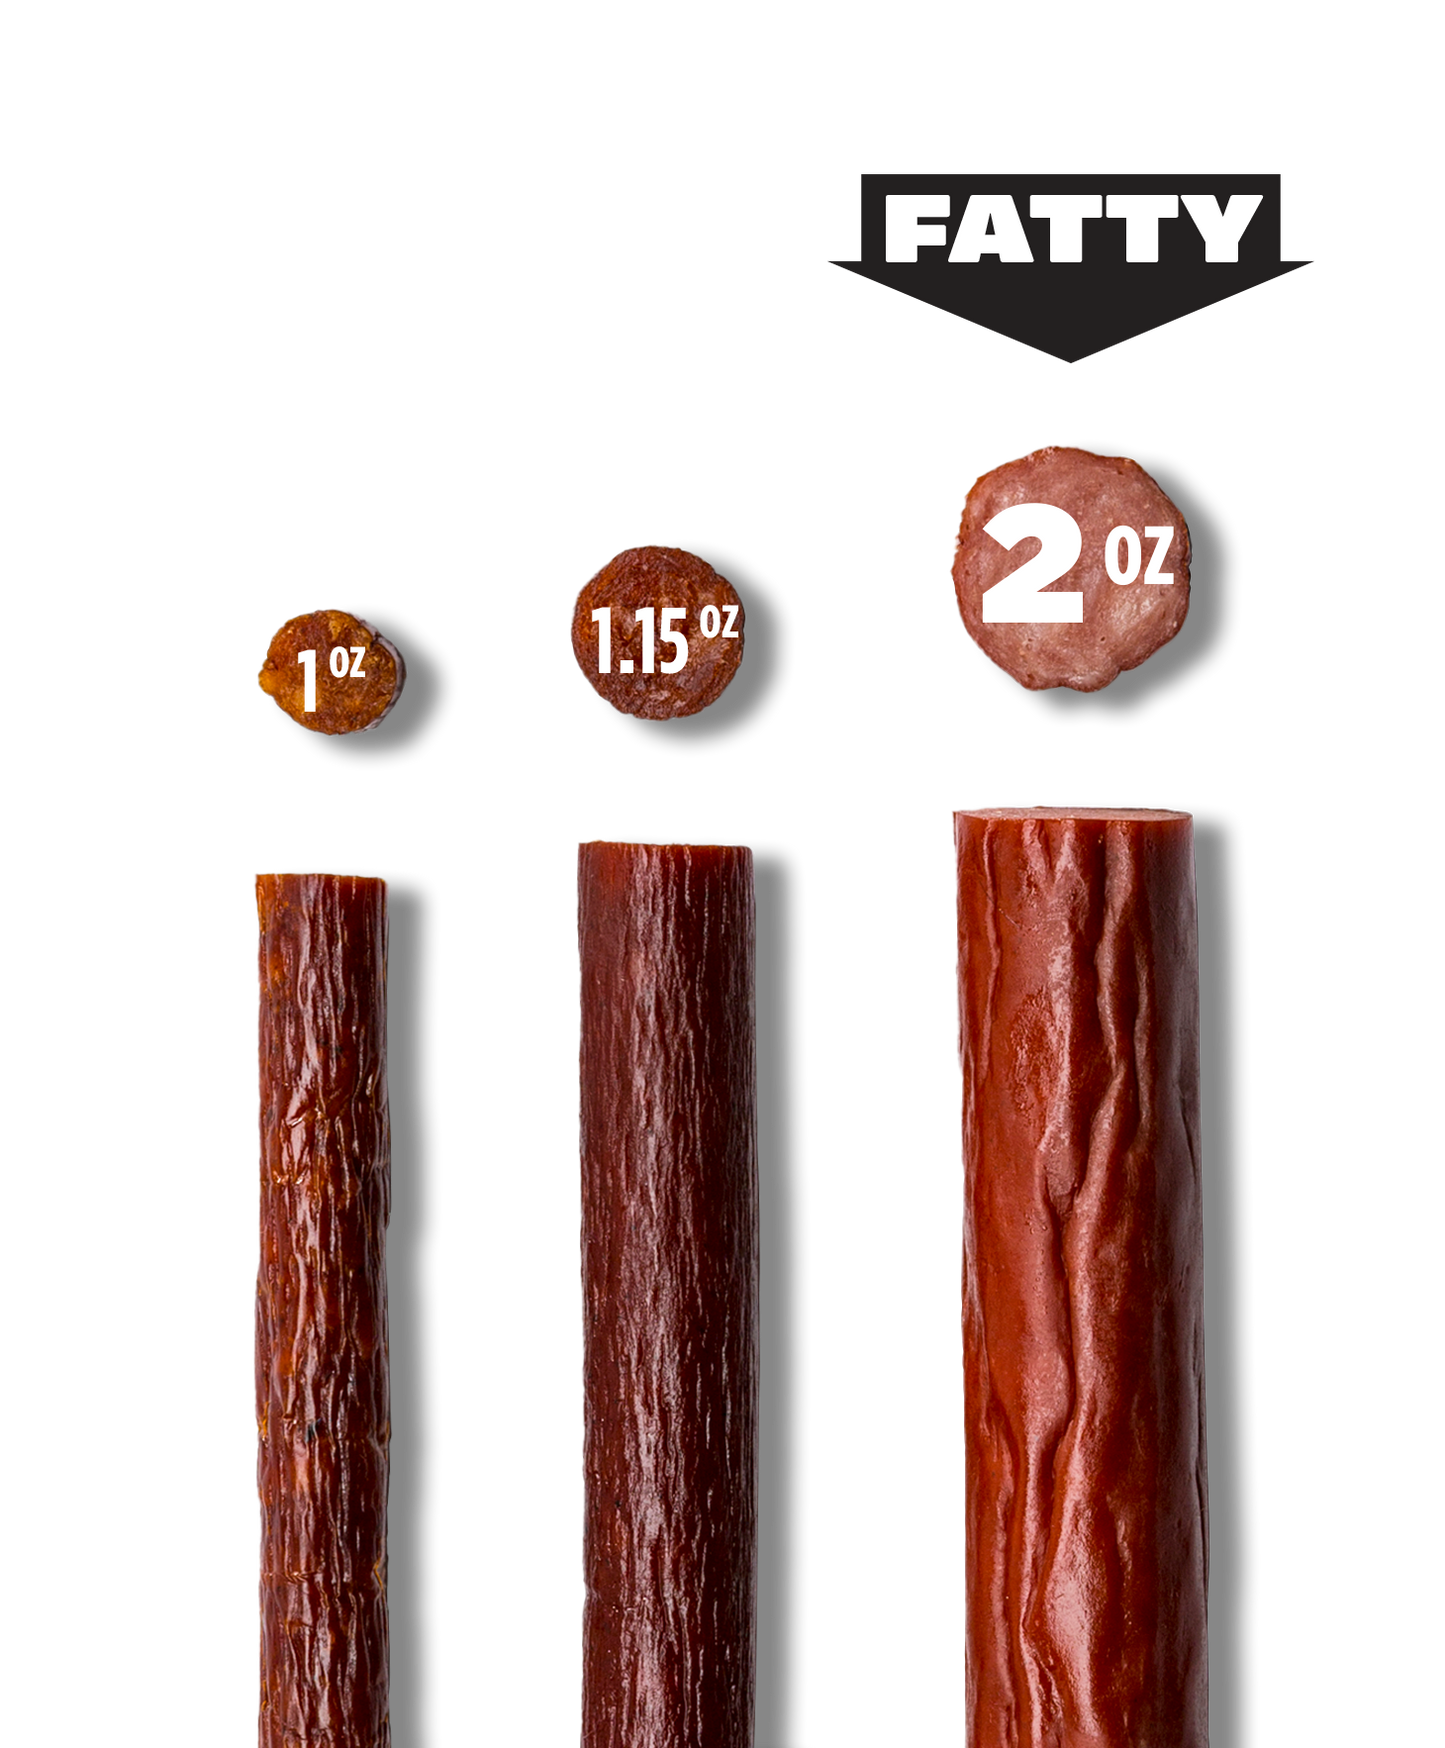 Fatty's Smoked Meat Snacks Honey BBQ 2oz - 20ct